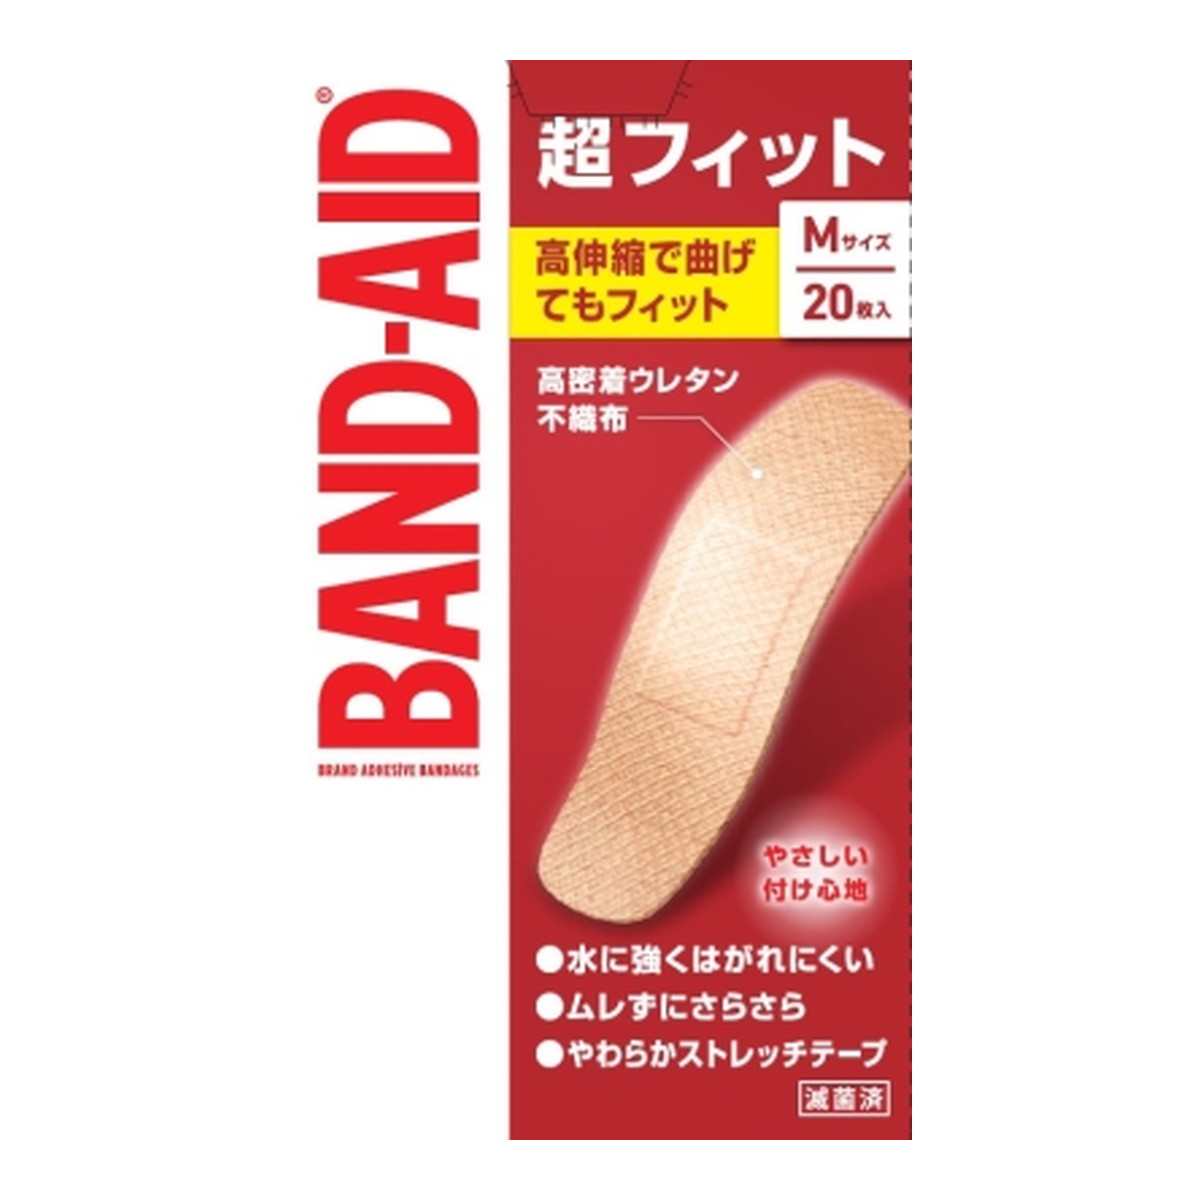 【送料込】 BAND-AID バンドエイド 超フィット Mサイズ 20枚入 1個